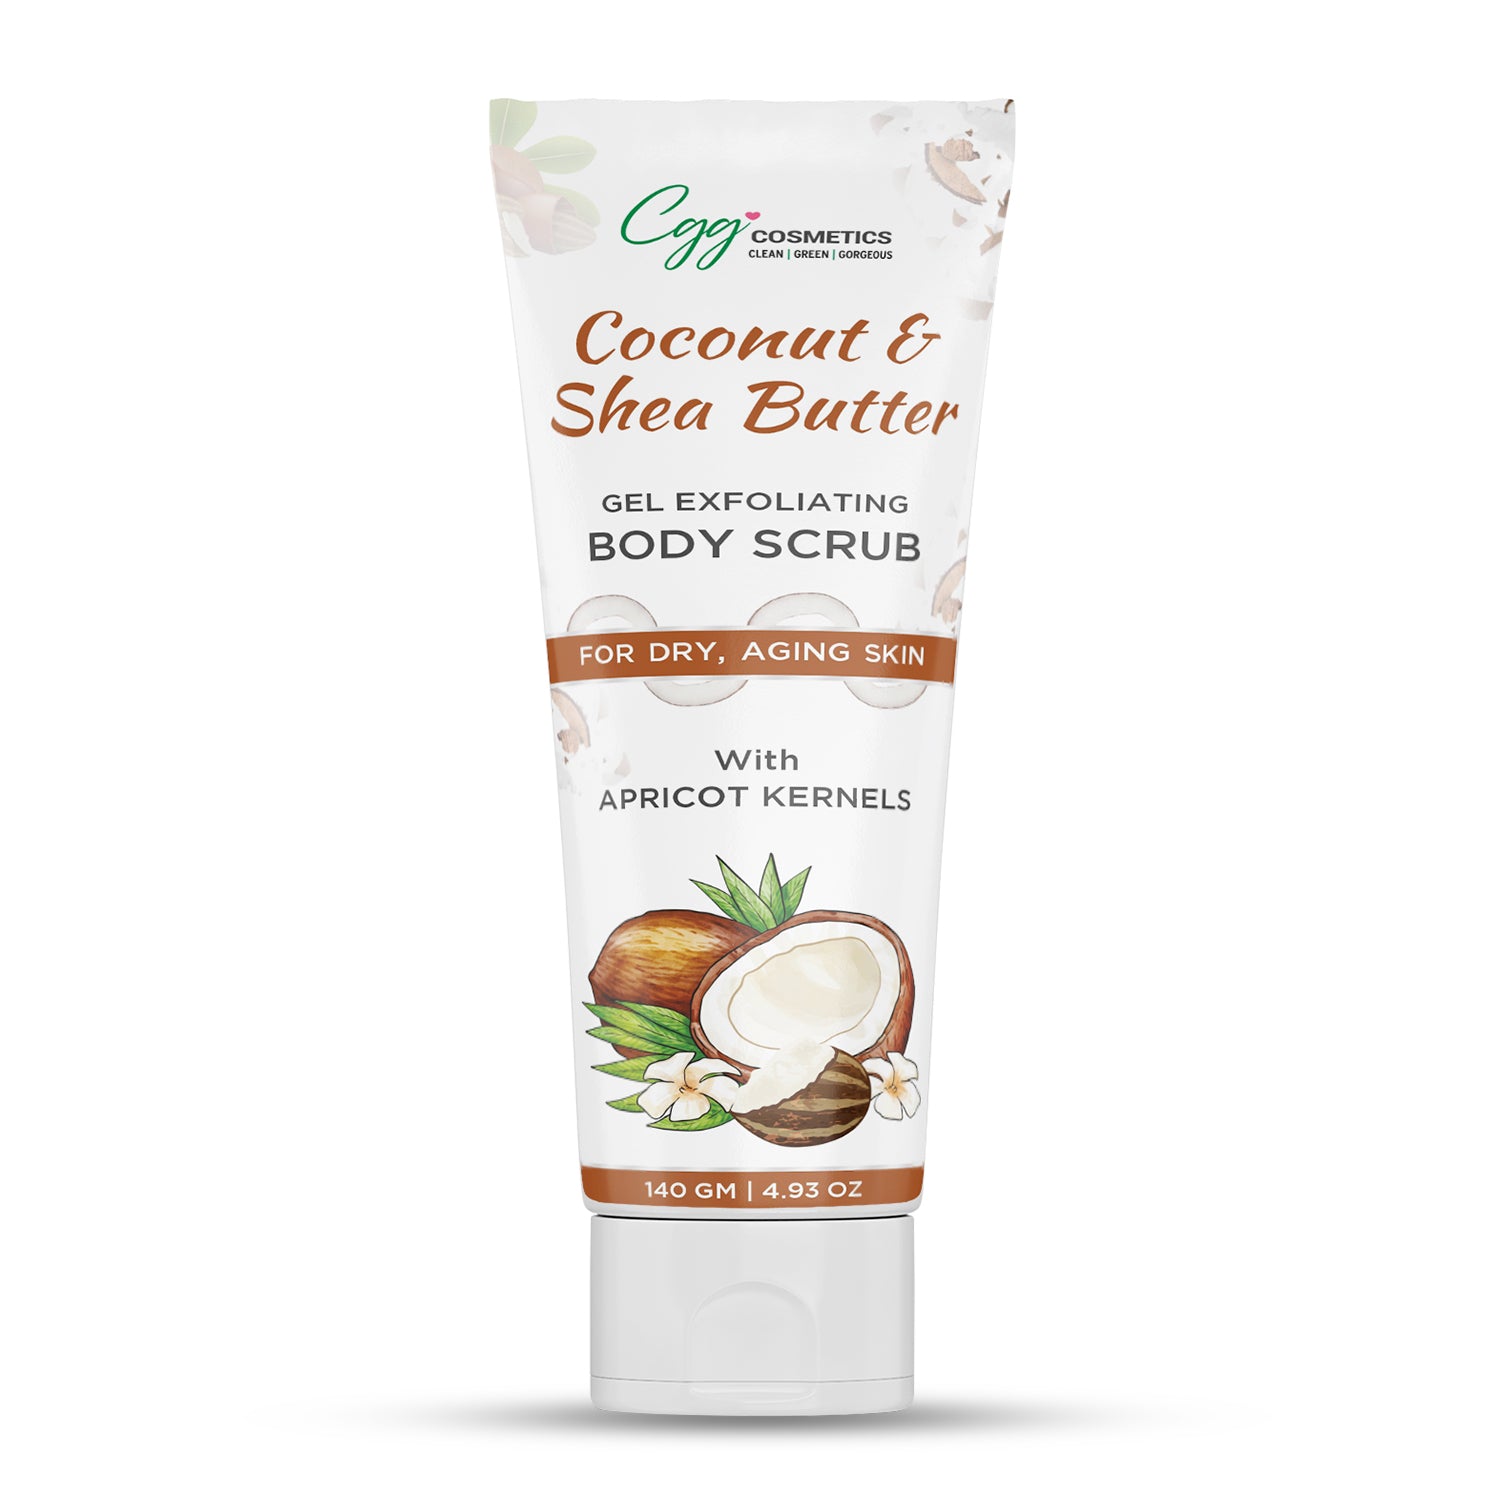 CGG Cosmetics Coconut & Shea Butter Gel Exfoliating Body Scrub - Dry Aging Skin & 100% Natural Shea - 140 gm